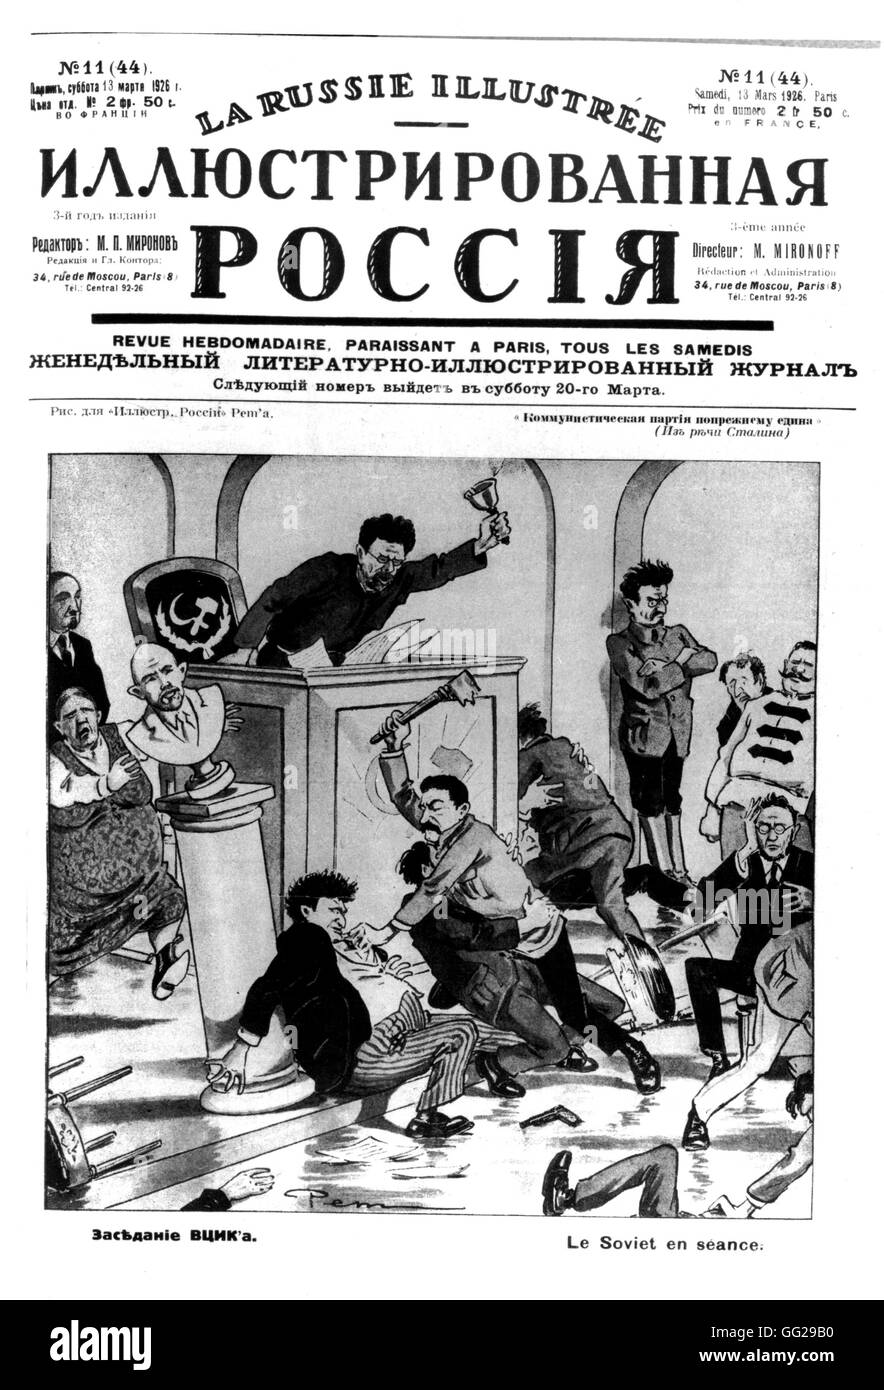 Dessin animé satirique soviétique sur une session. Trotsky, dans le r., Kalinine dans la galerie, Staline à tabac Kamenev. dans 'La Russie illustré', magazine publié à Paris. Urss 1926 Banque D'Images